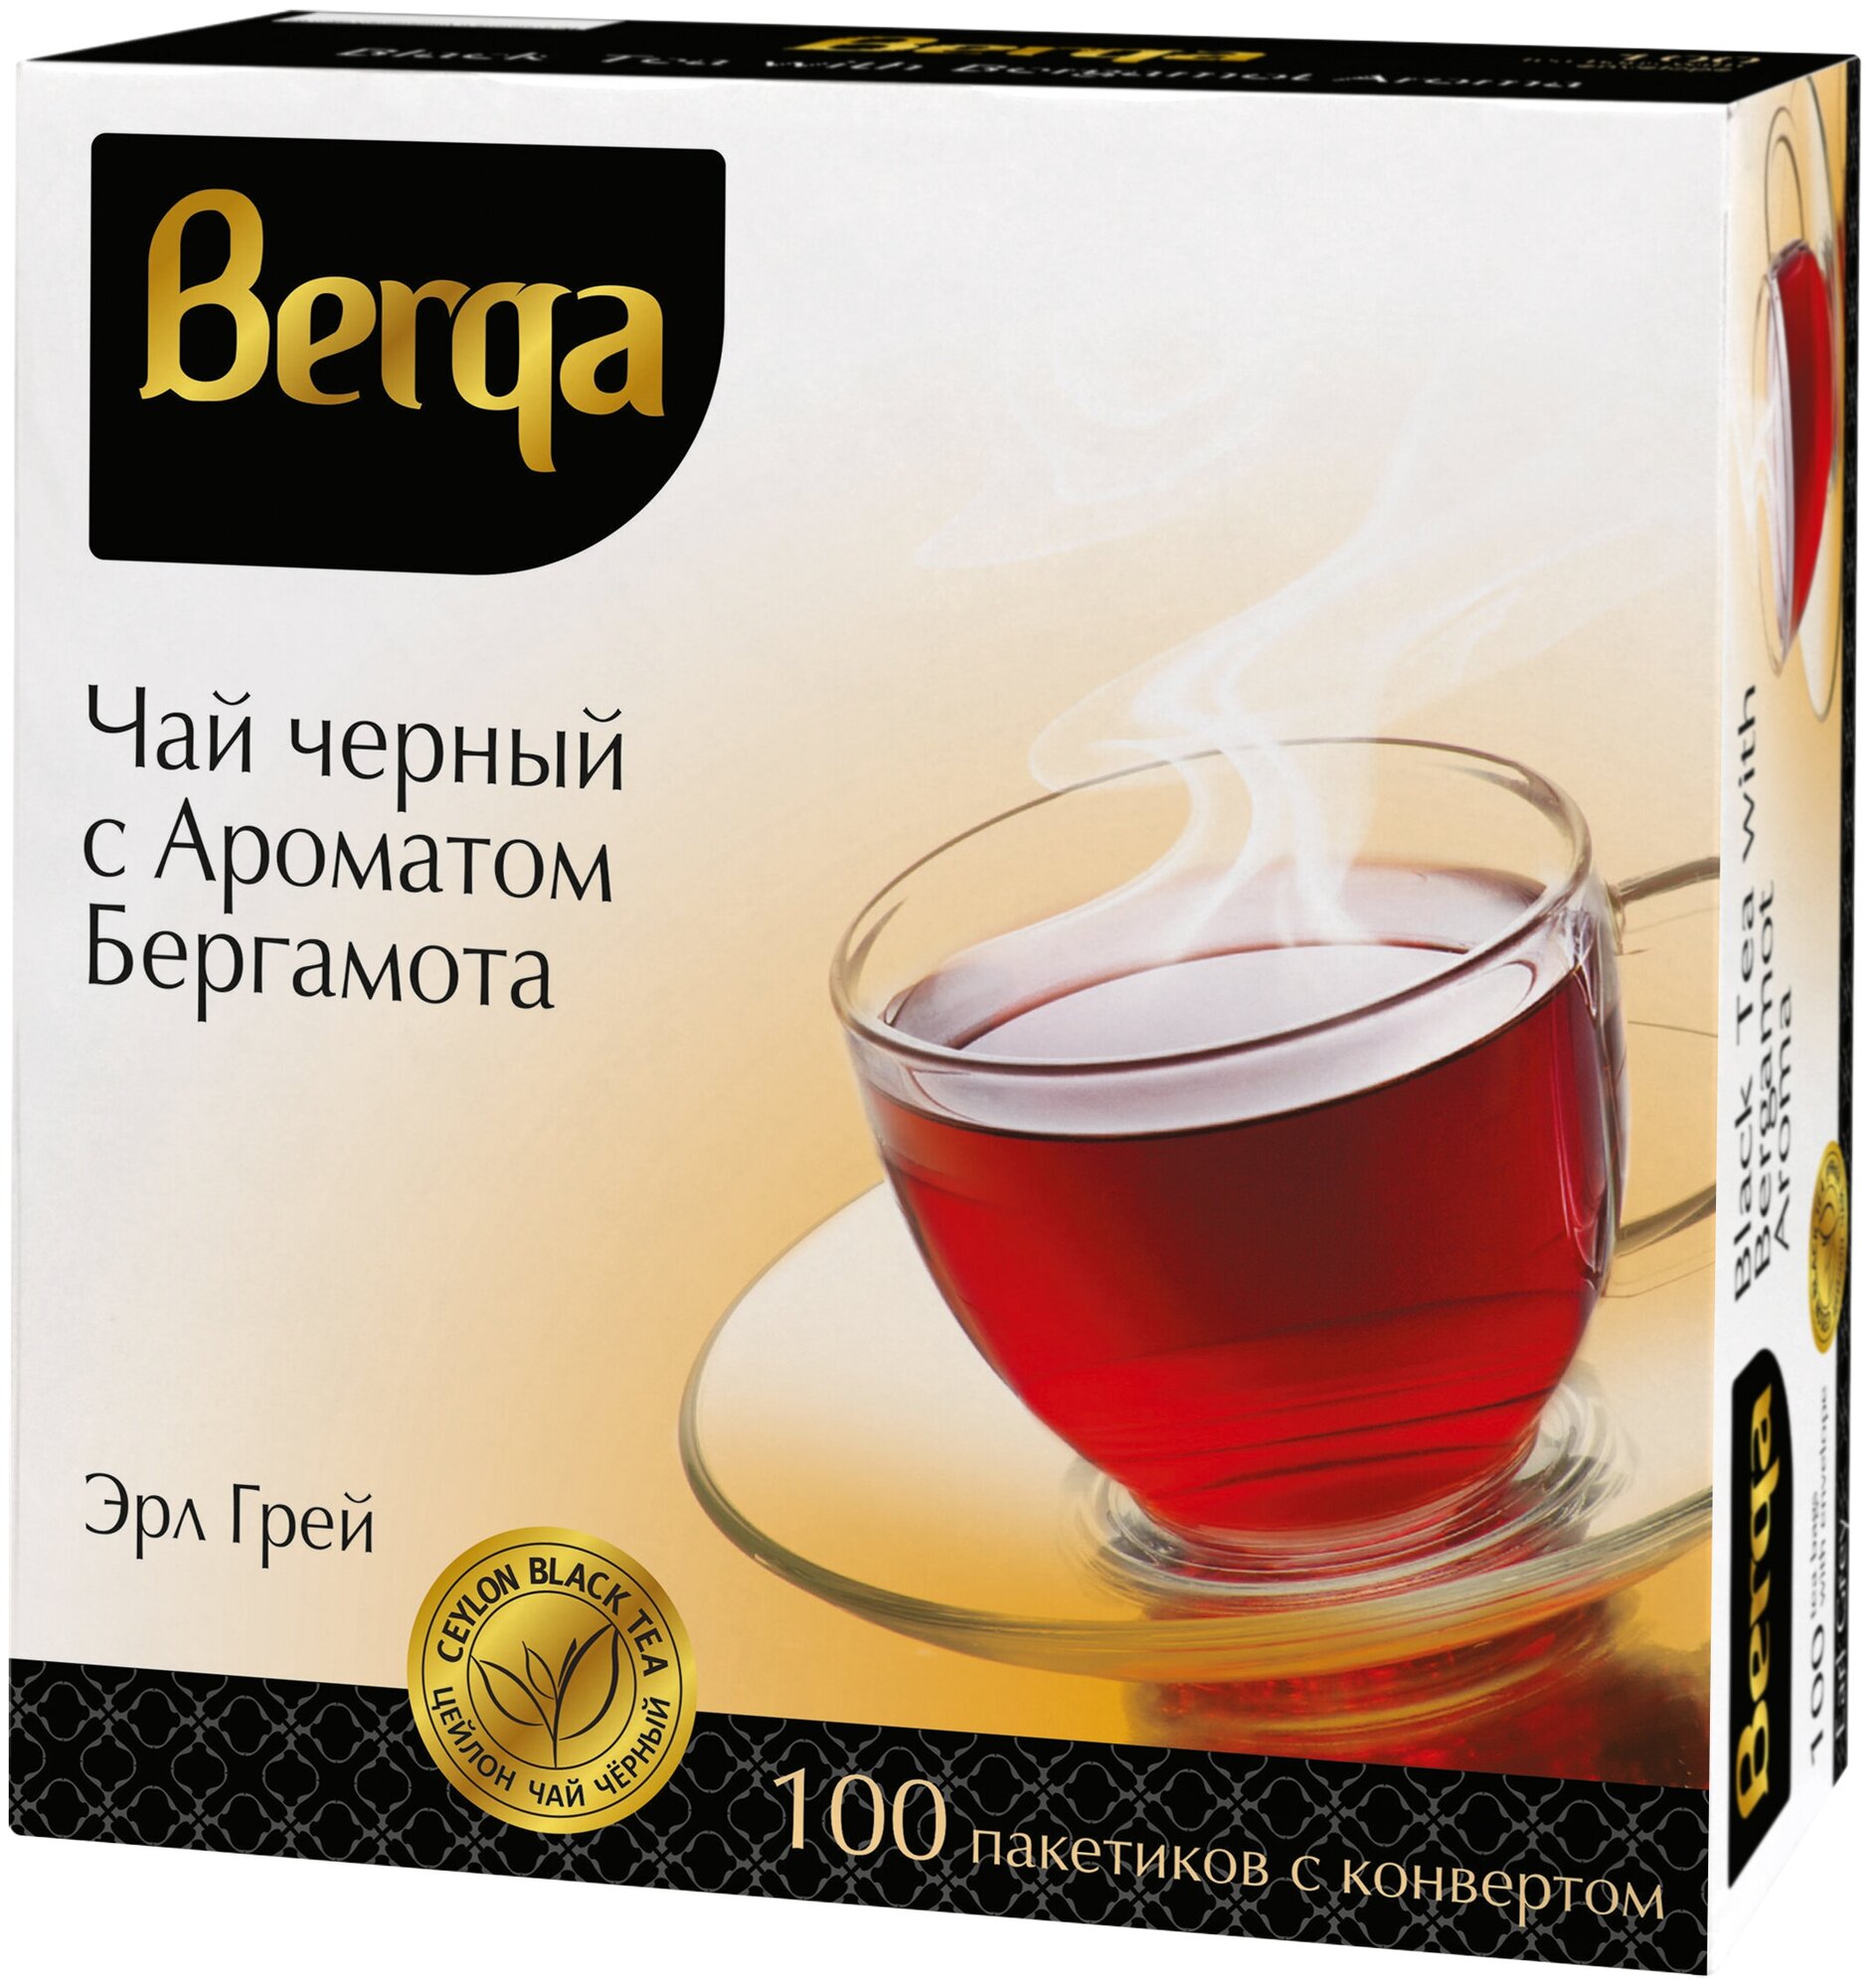 Чай в пакетиках черный Berga Earl Grey, с бергамотом, 100 шт в сашетах